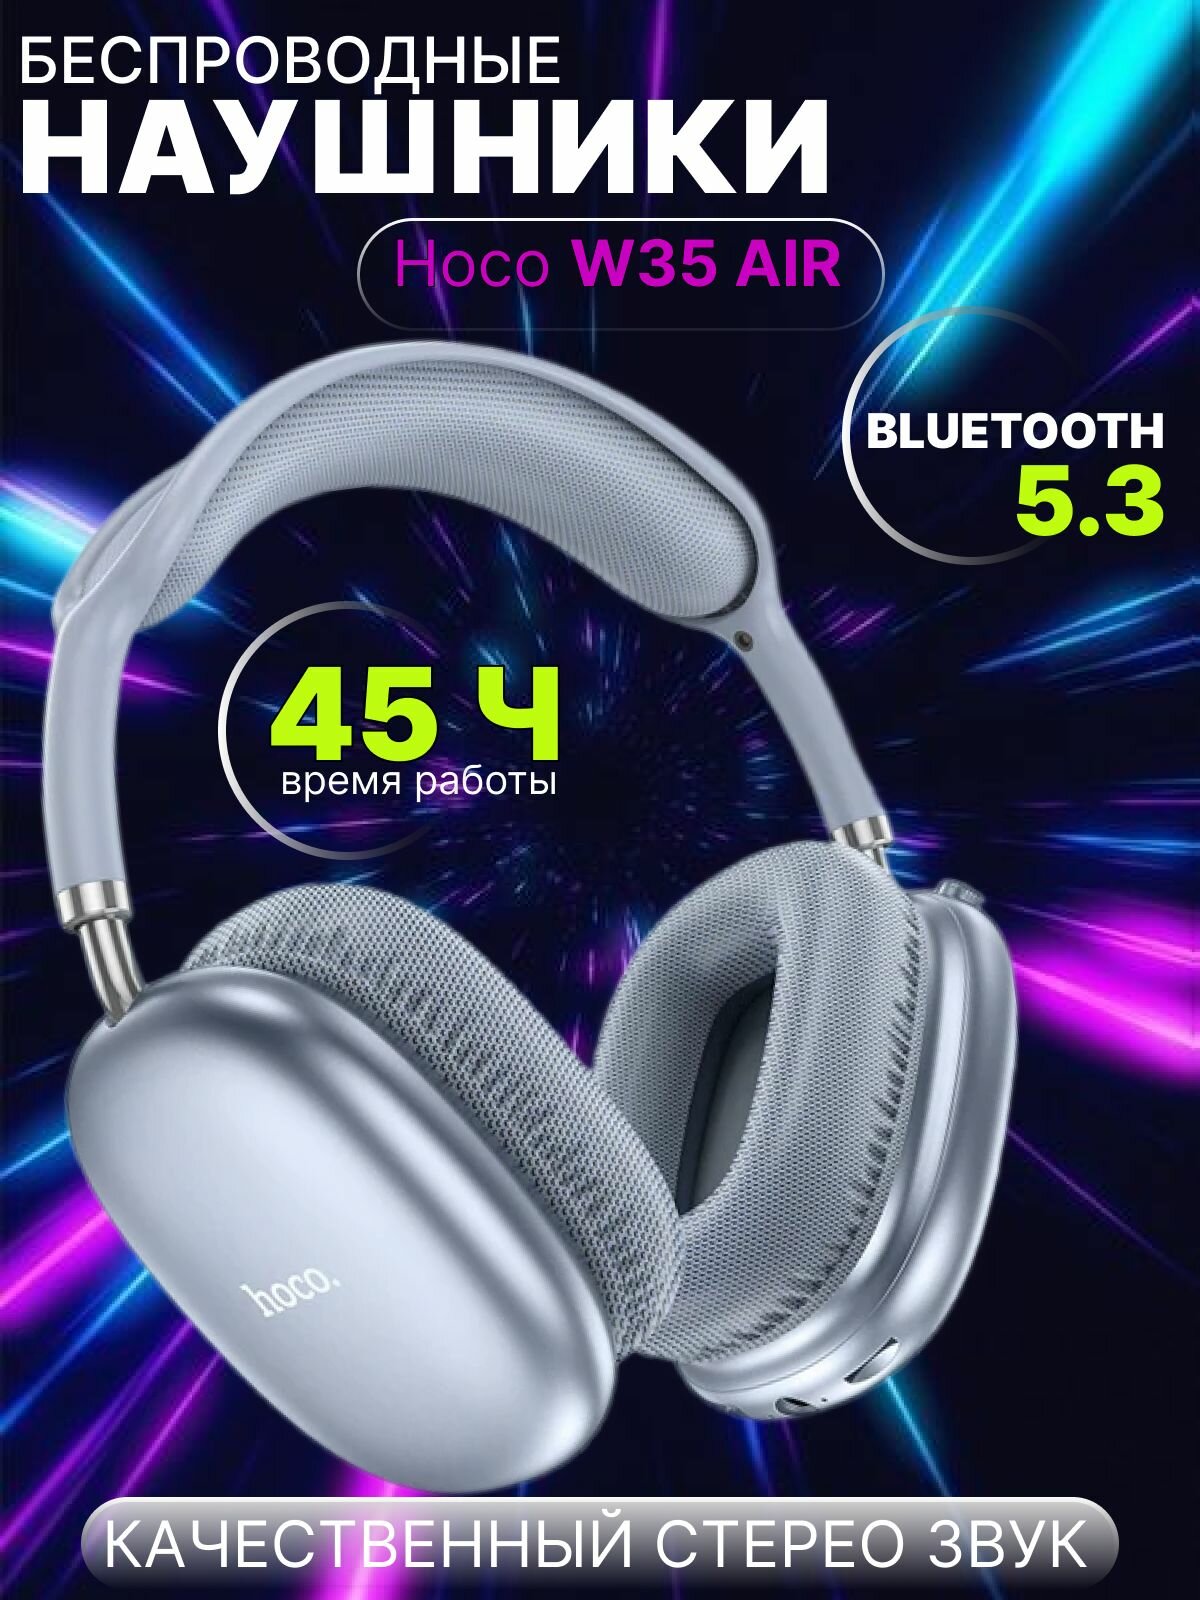 Наушники беспроводные Hoco W35 AiR Light с микрофоном большие складные полноразмерные micro SD слот Bluetooth 5.3 AUX кабель синие